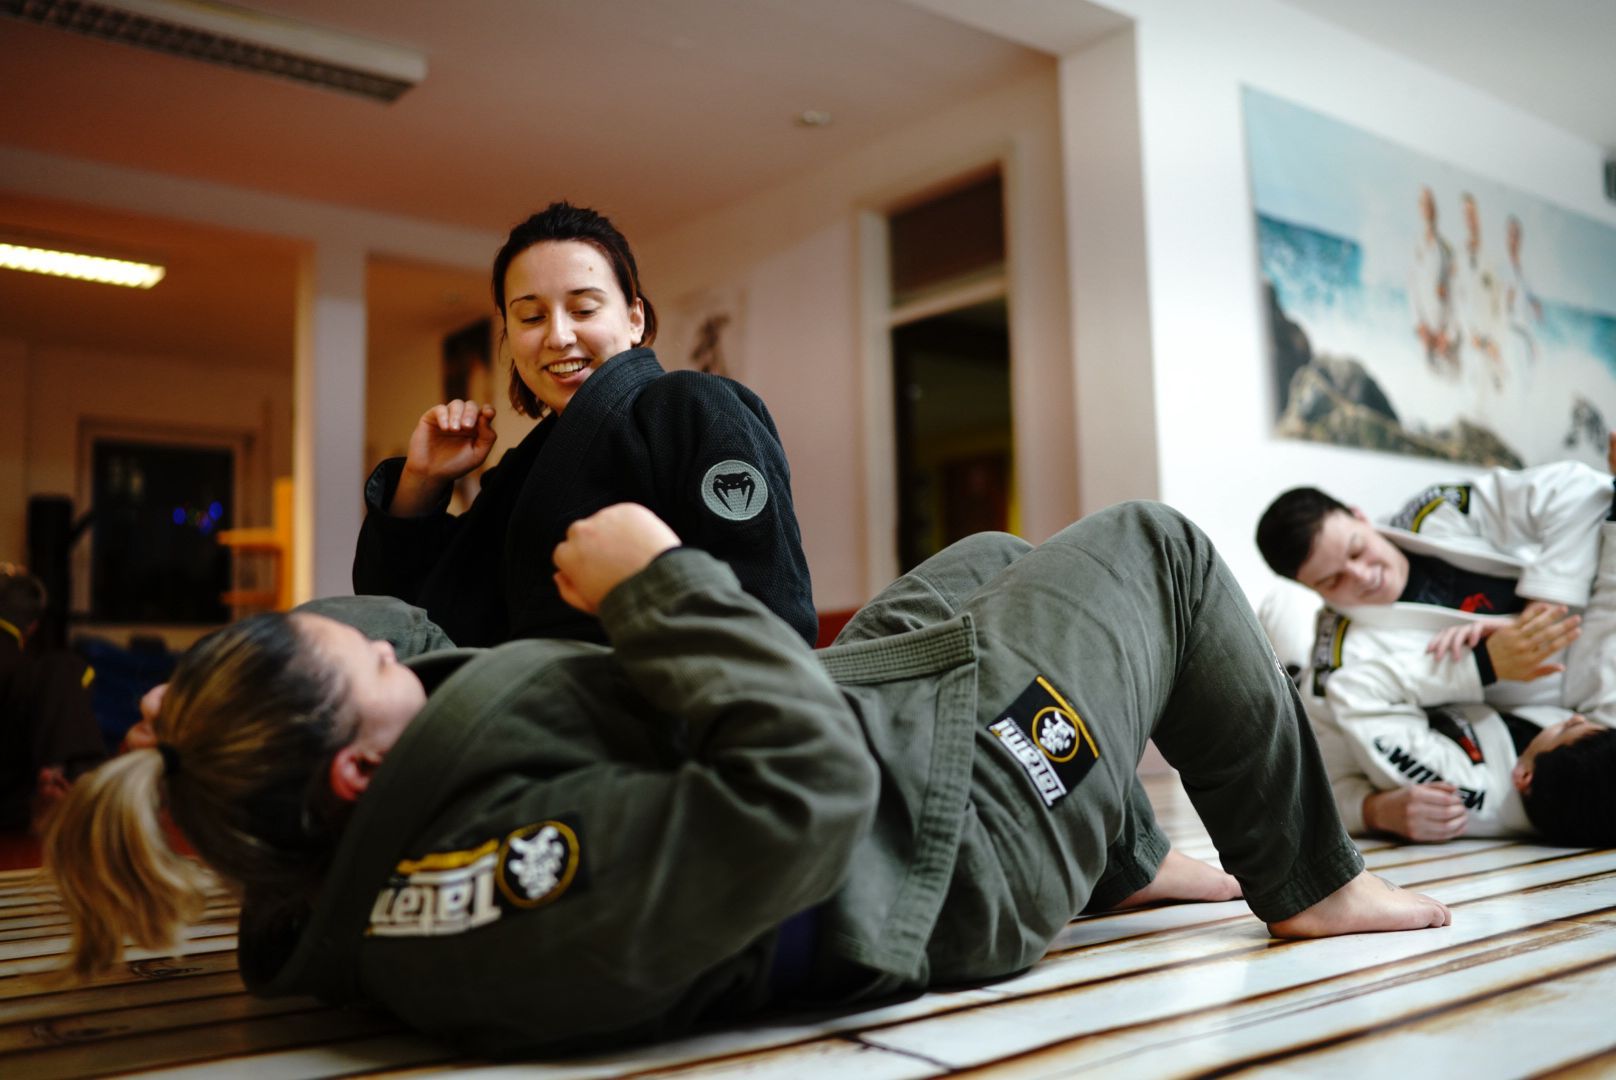 Die Frauen des Brazilian Jiu Jitsu Tiger Teams in Bamberg beim Kampfsport Brazilian Jiu Jitsu. Das Brazilian Jiu Jitsu Training in Bamberg (BJJ Bamberg), konzentriert sich auf MMA-Vorbereitung, Fitness und Selbstverteidigung. BJJ Bamberg ist ideal für Männer und Frauen. Eine sehr effektiver Kampfsport in Bamberg.